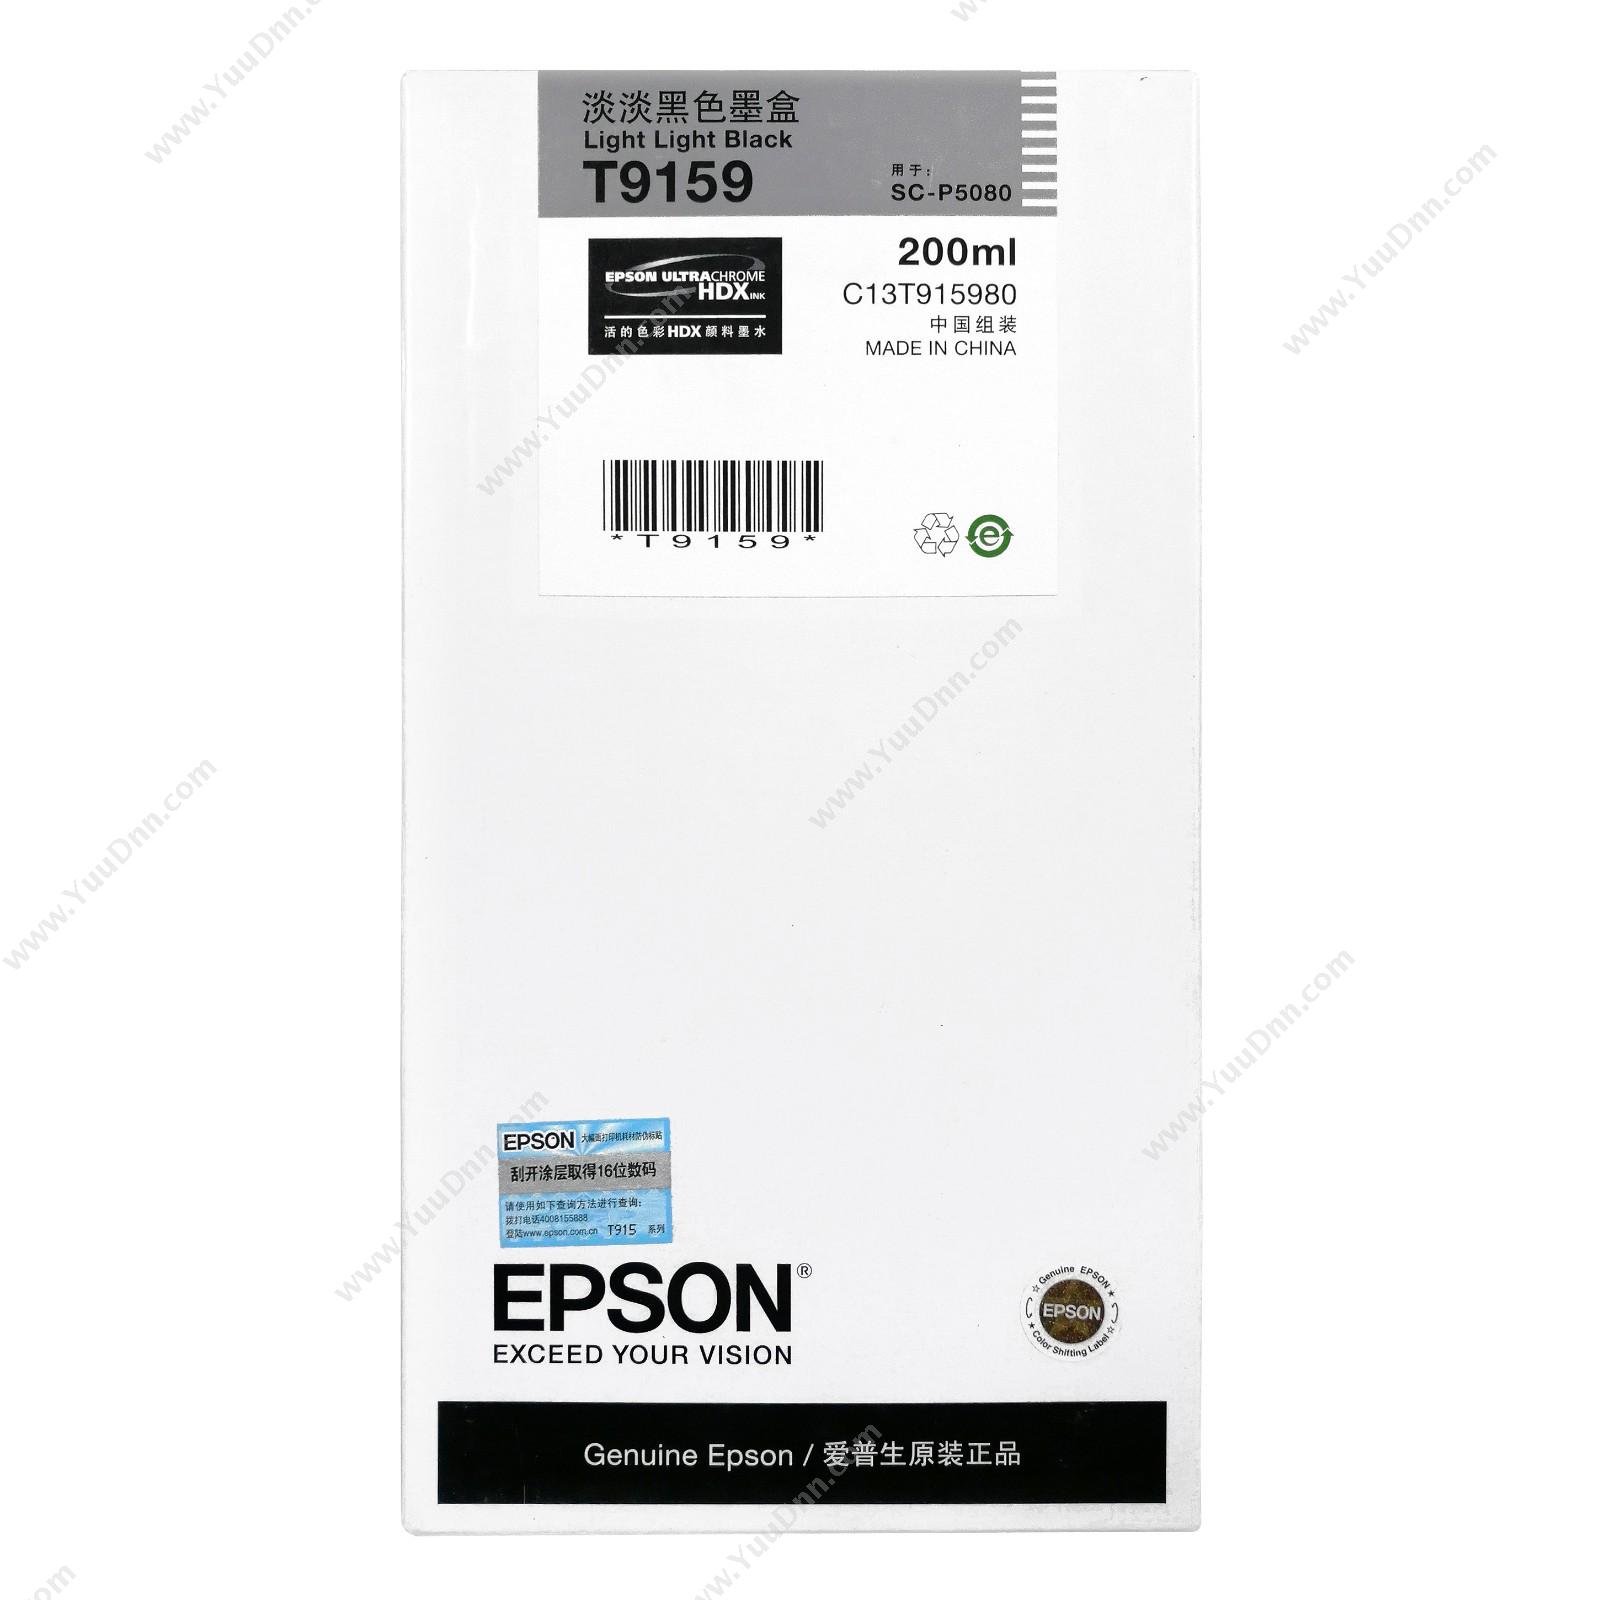 爱普生 EpsonP5080淡淡黑200ml(C13T915980)墨盒